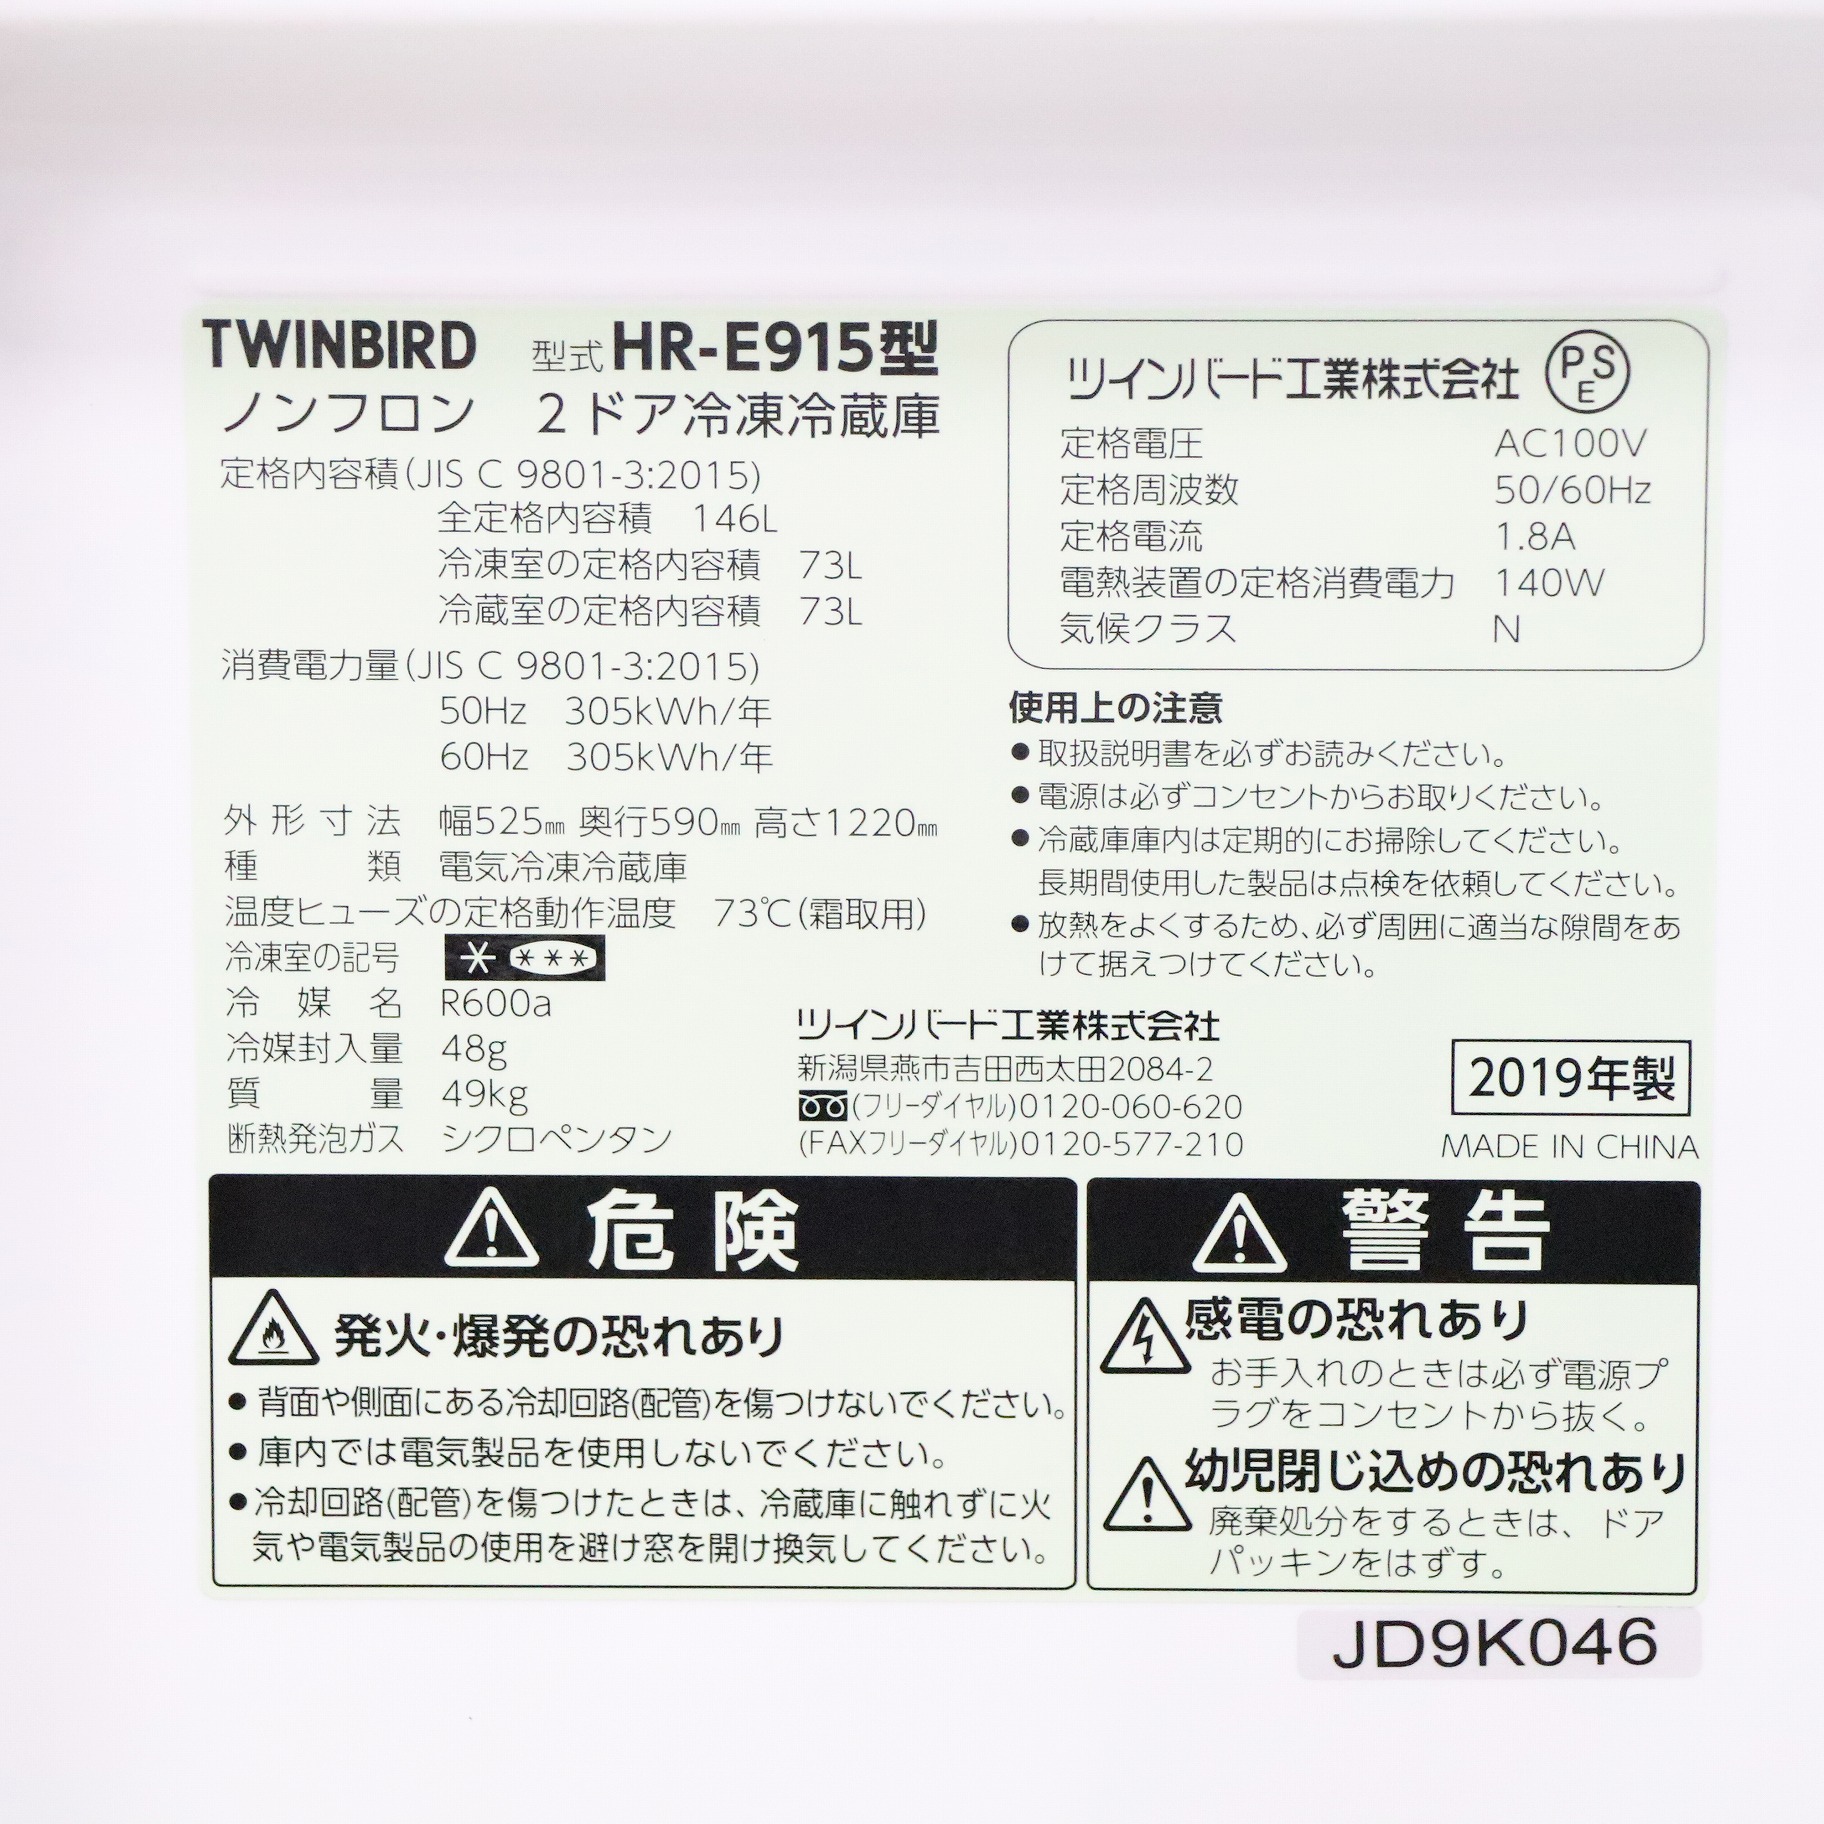 〔展示品〕 HR-E915PW